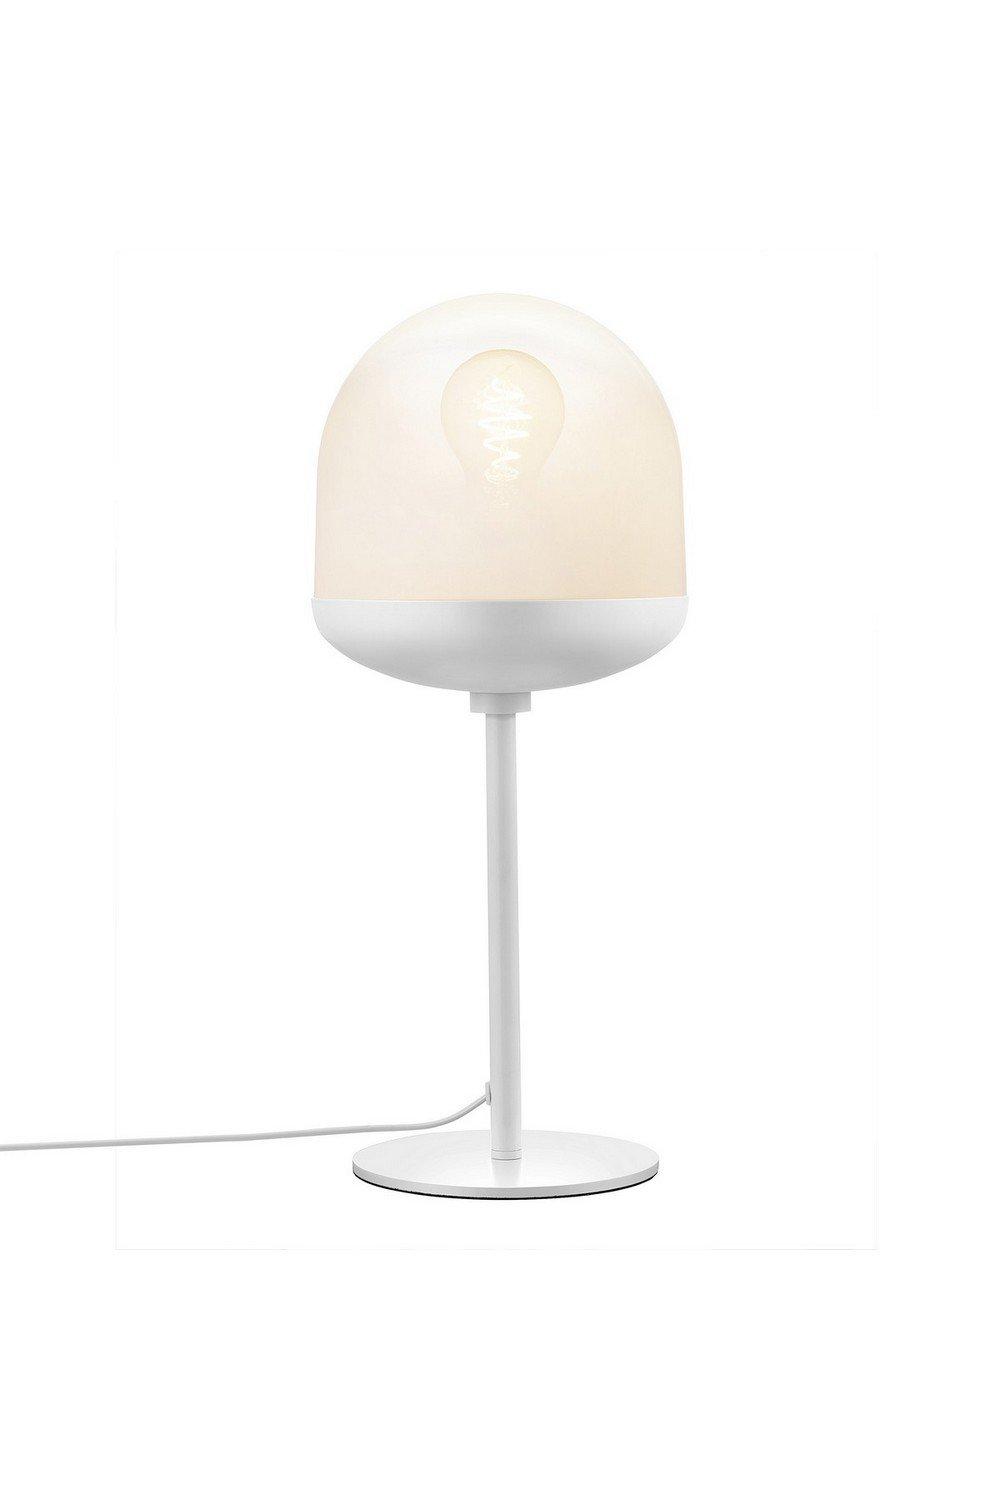 Magia Globe Table Lamp White E27